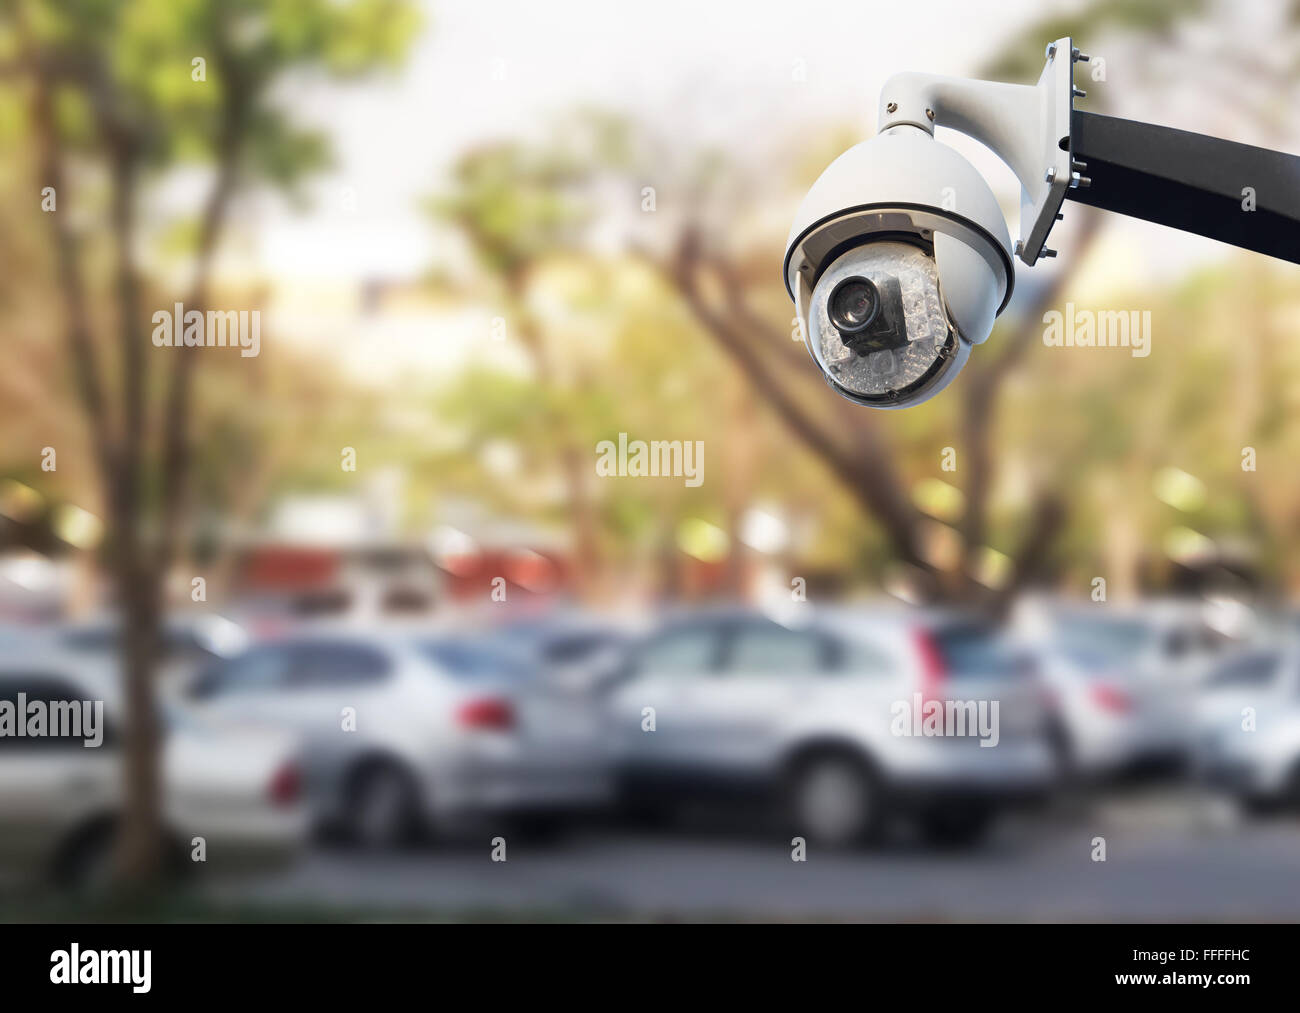 https://c8.alamy.com/comp/FFFFHC/closeup-image-of-cctv-security-camera-outdoor-at-car-park-FFFFHC.jpg